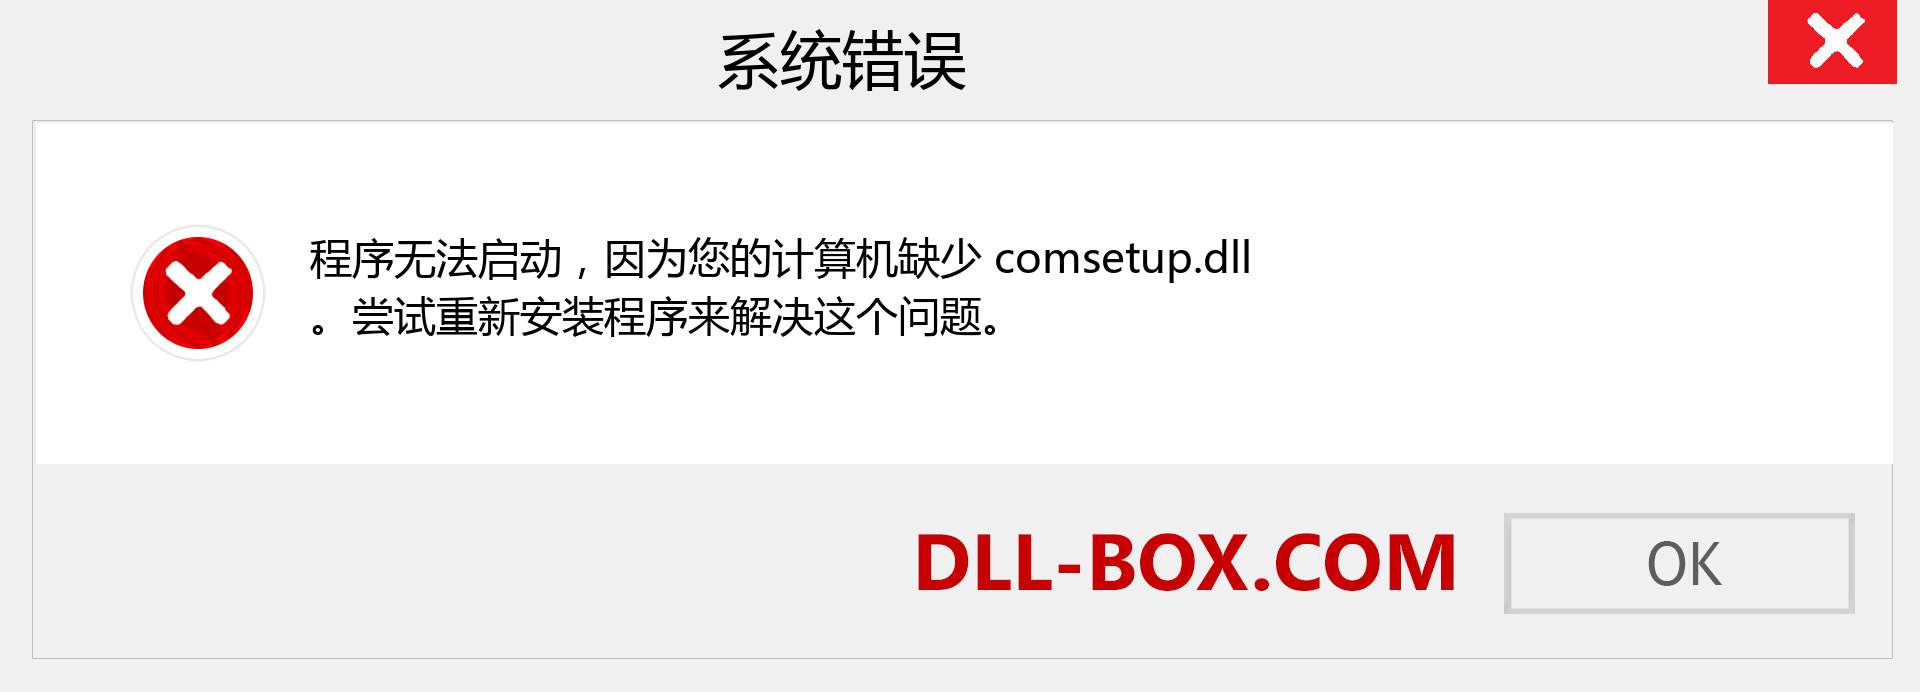 comsetup.dll 文件丢失？。 适用于 Windows 7、8、10 的下载 - 修复 Windows、照片、图像上的 comsetup dll 丢失错误